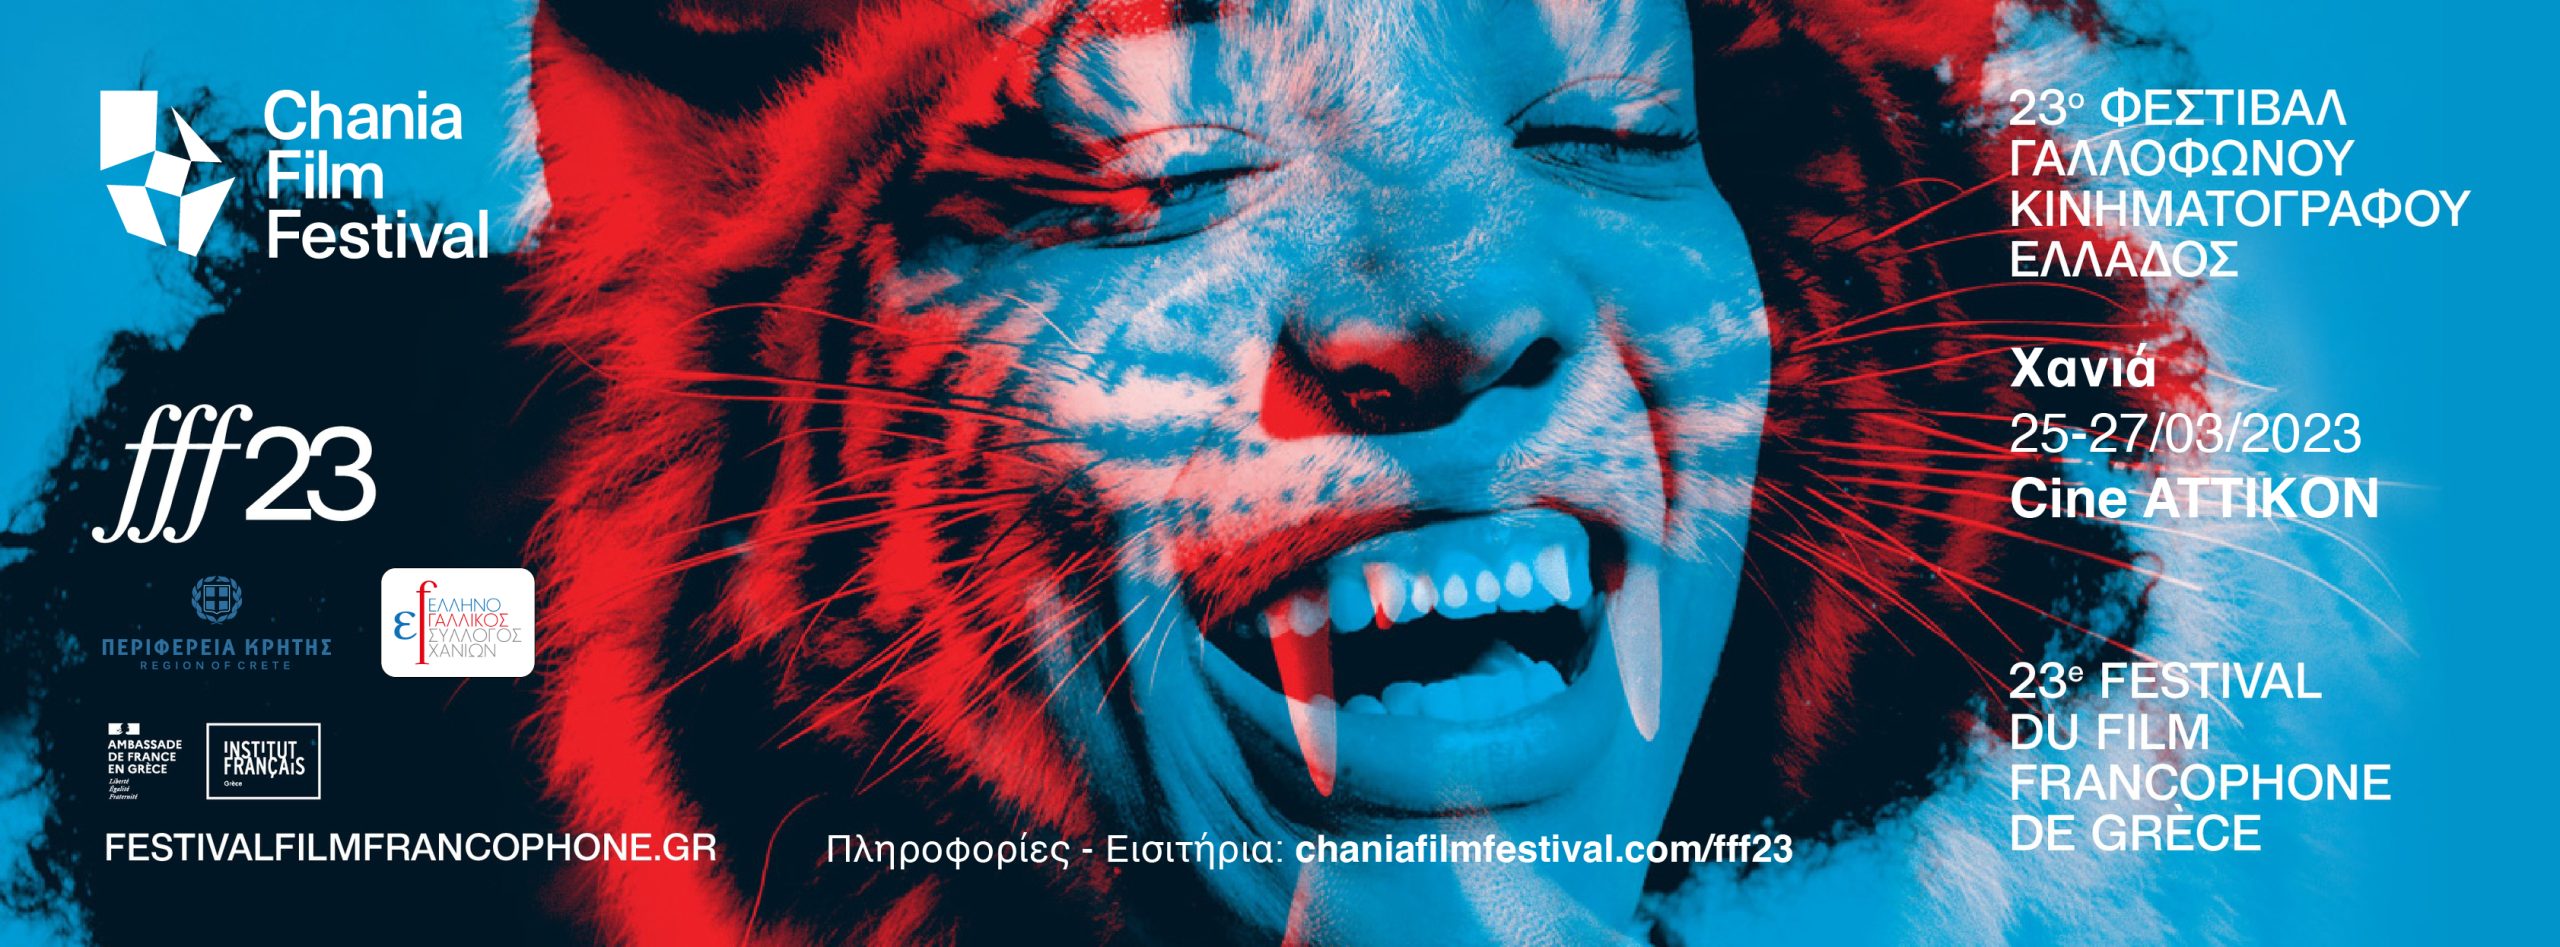 Το 23ο Φεστιβάλ Γαλλόφωνου Κινηματογράφου φιλοξενείται στα Χανιά από το Φεστιβάλ Κινηματογράφου Χανίων